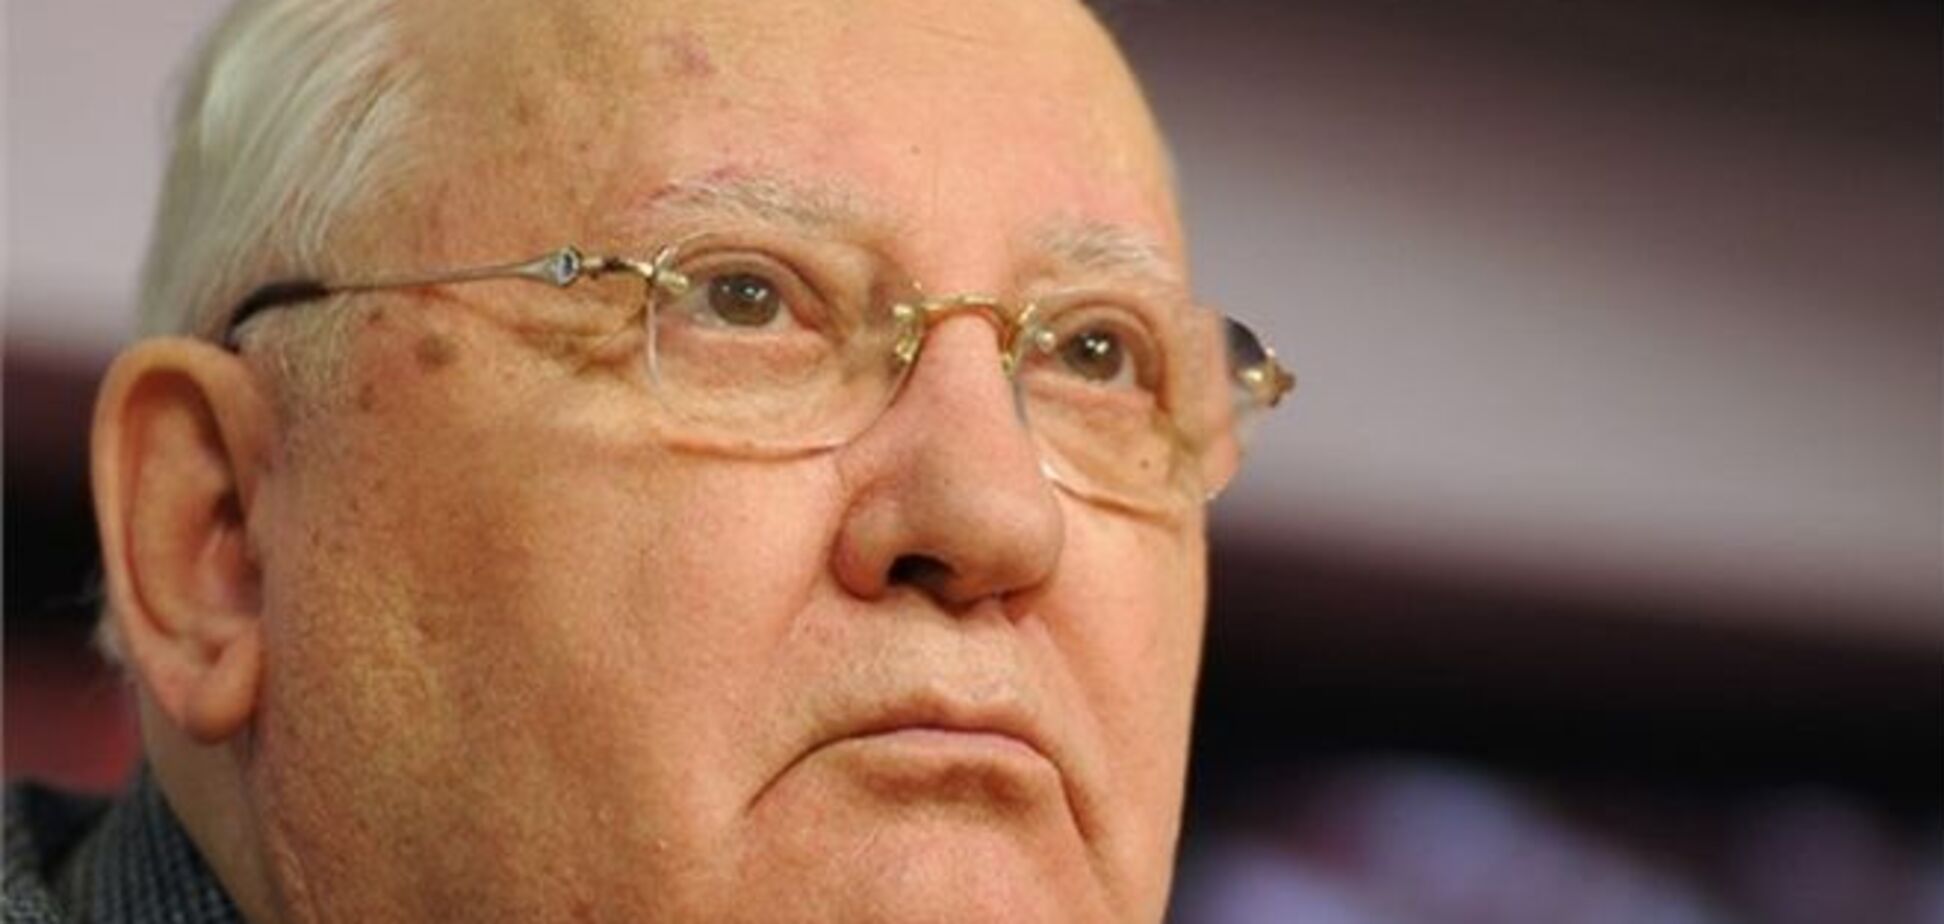 РИА Новости слезно извинилось перед Горбачевым